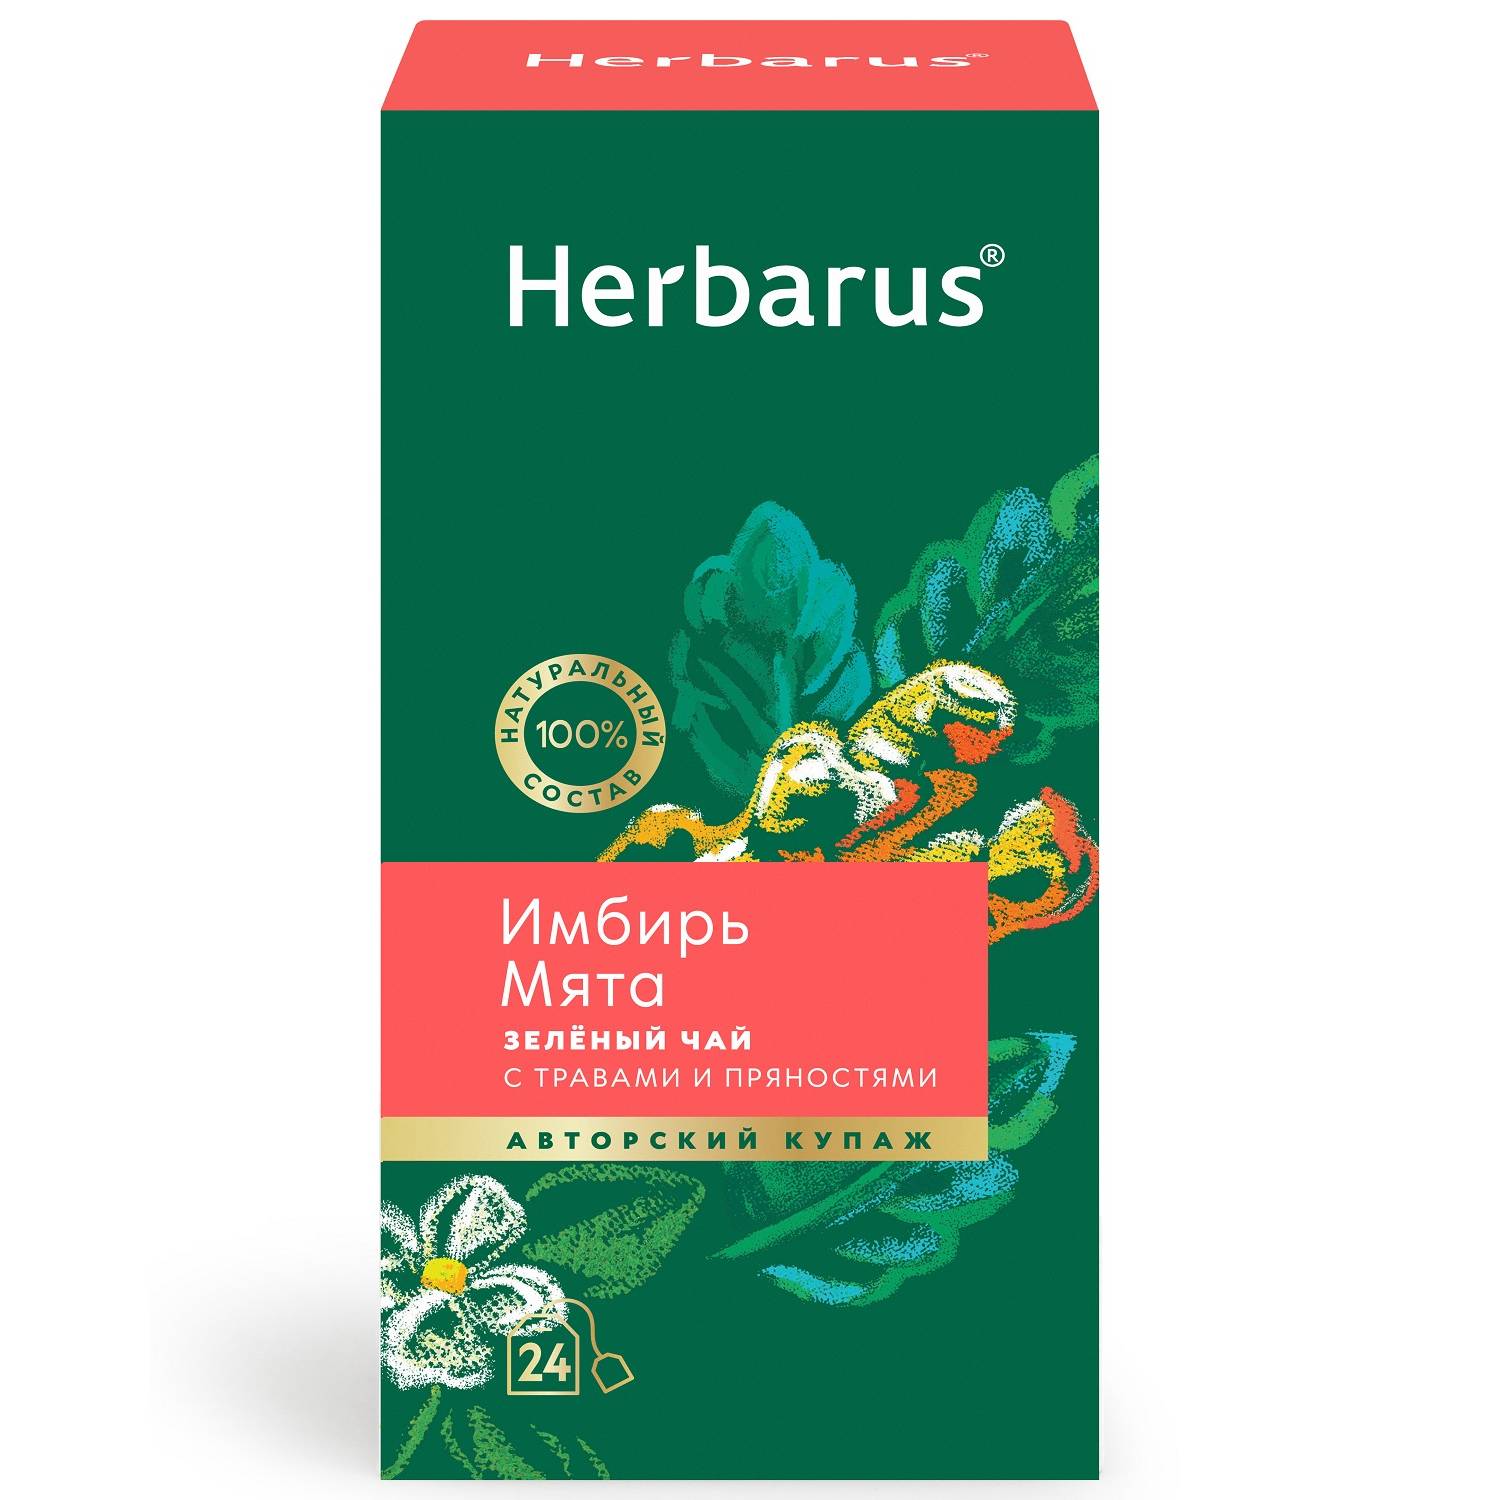 Herbarus Зеленый чай с травами и пряностями Имбирь и мята, 24 пакетика (Herbarus, Чай с добавками) herbarus чай улун с добавками нежный гармоничный 24 х 2 г herbarus чай с добавками